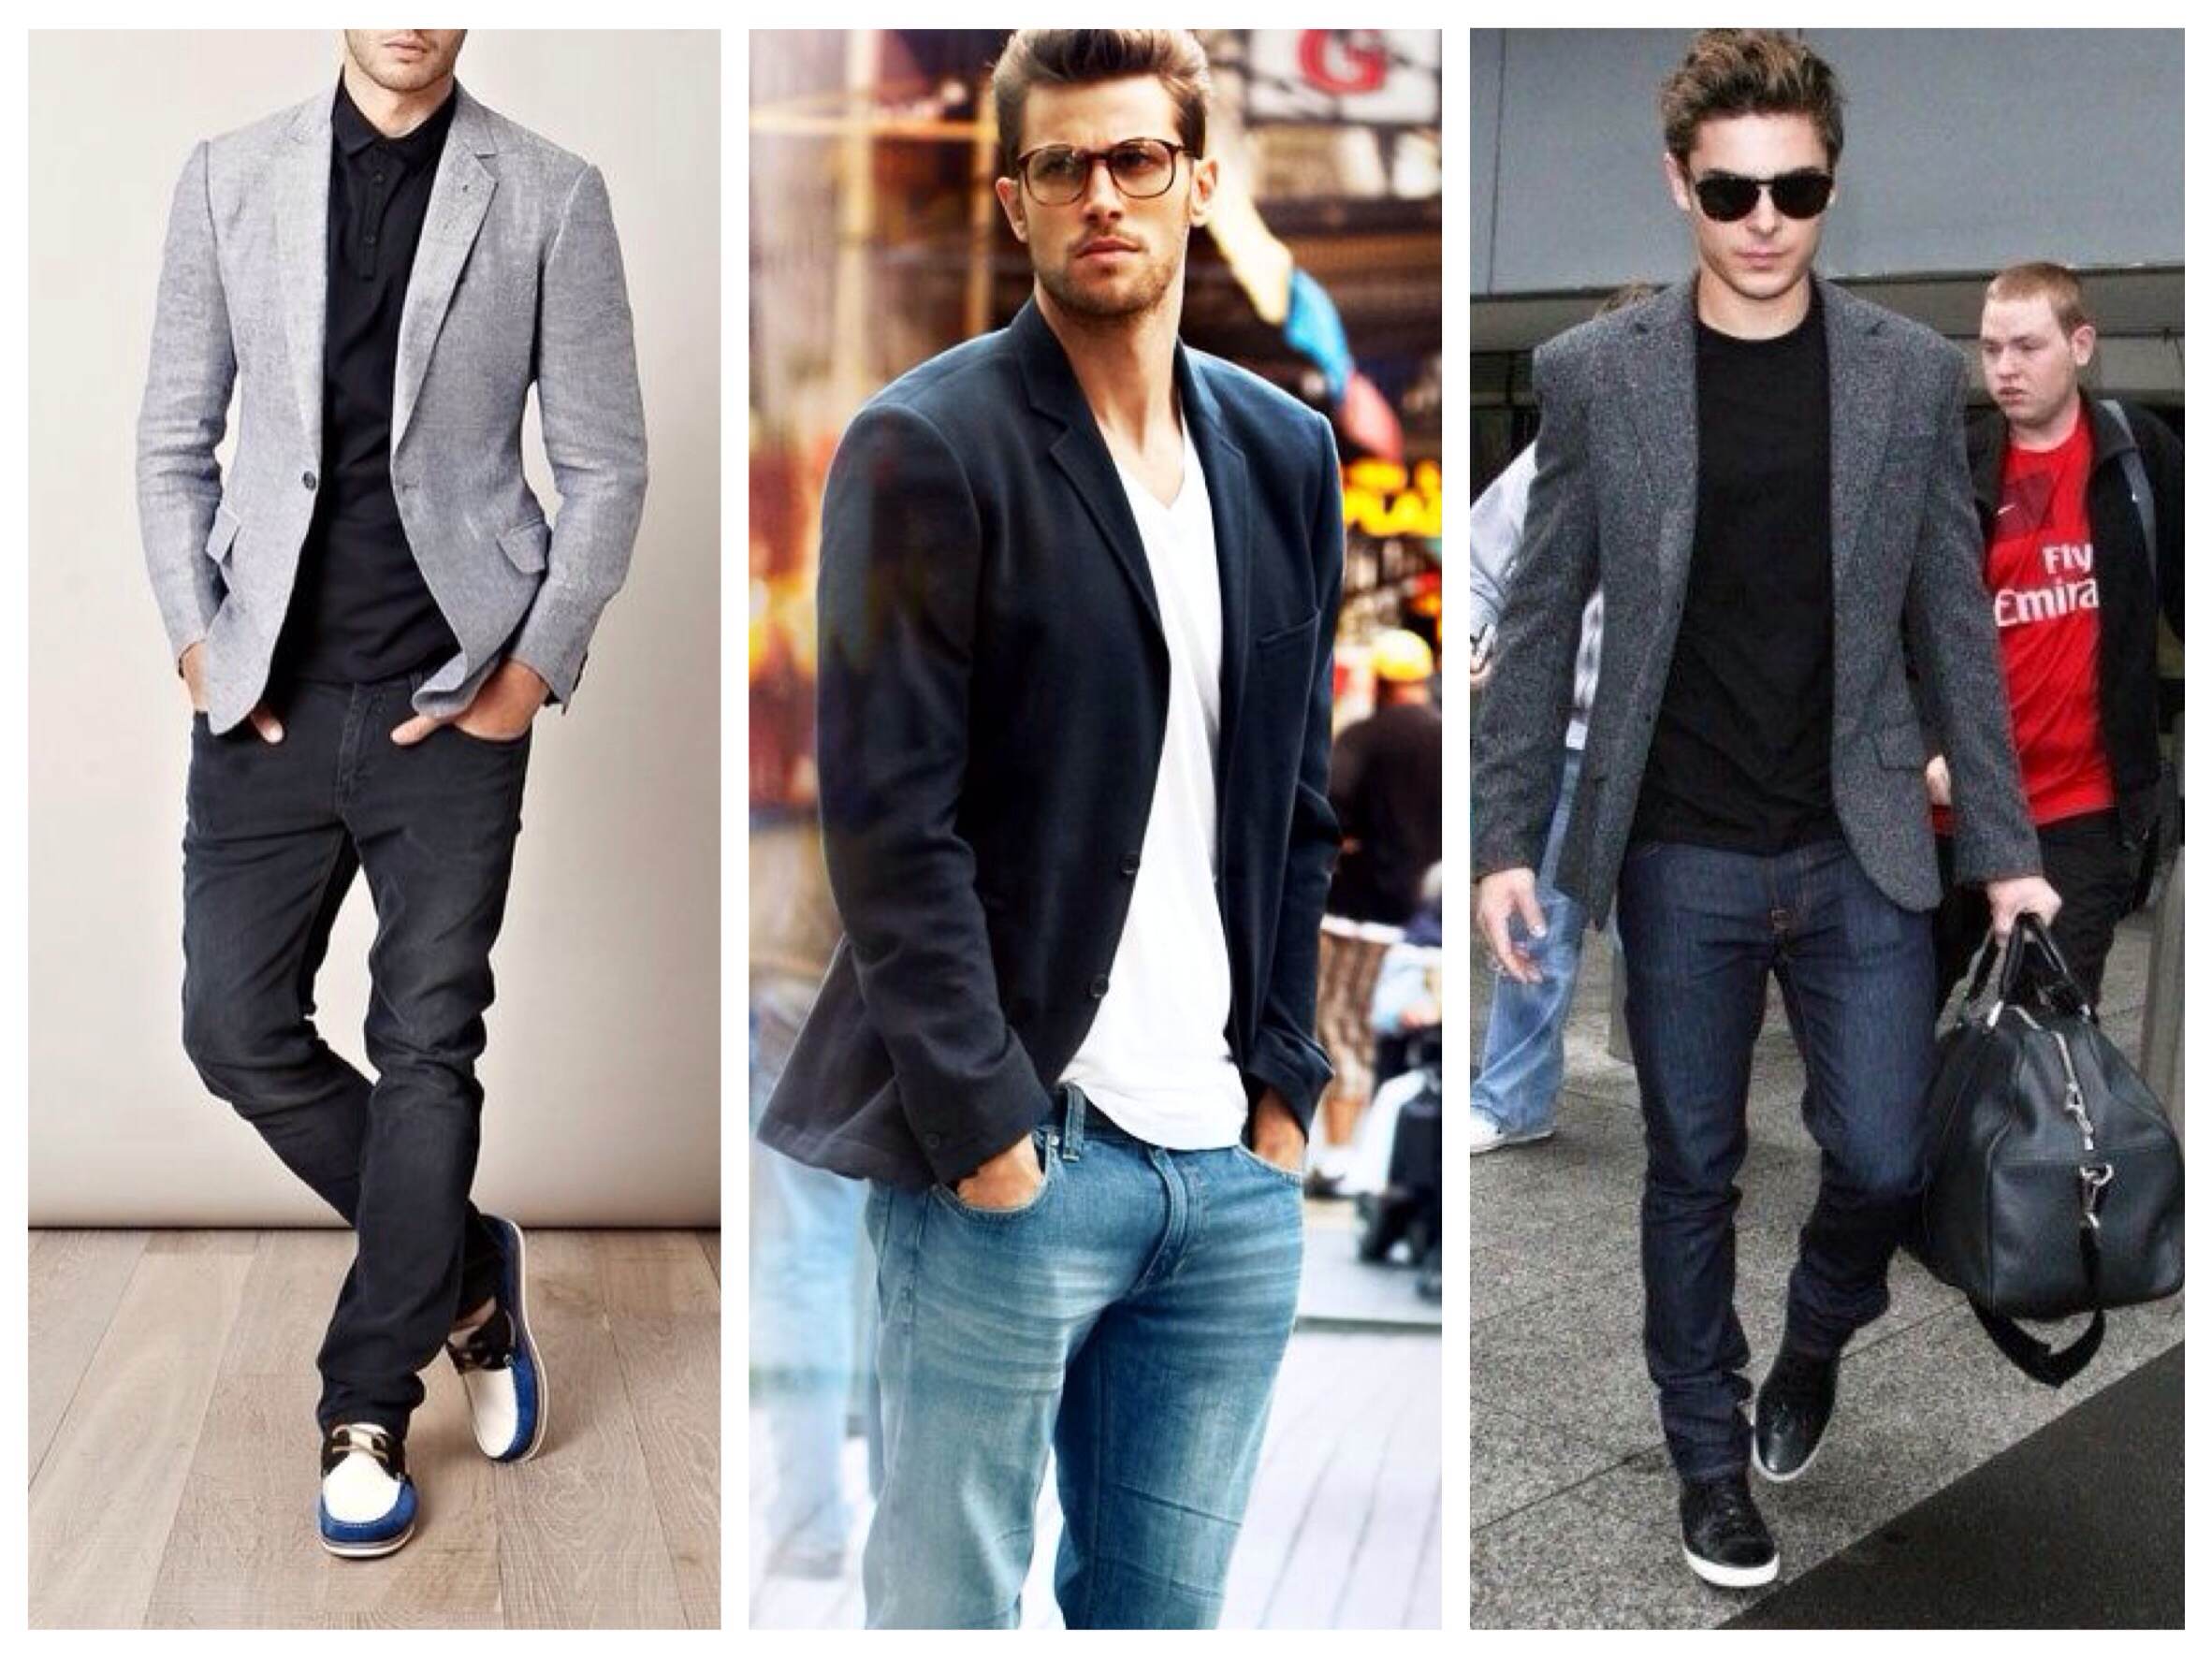 Как смотрится в образе мужская футболка с джинсами Можно ли заправлять мужскую майку в джинсы Как правильно носить джинсы с футболкой Какие образы подойдут для повседневной носки